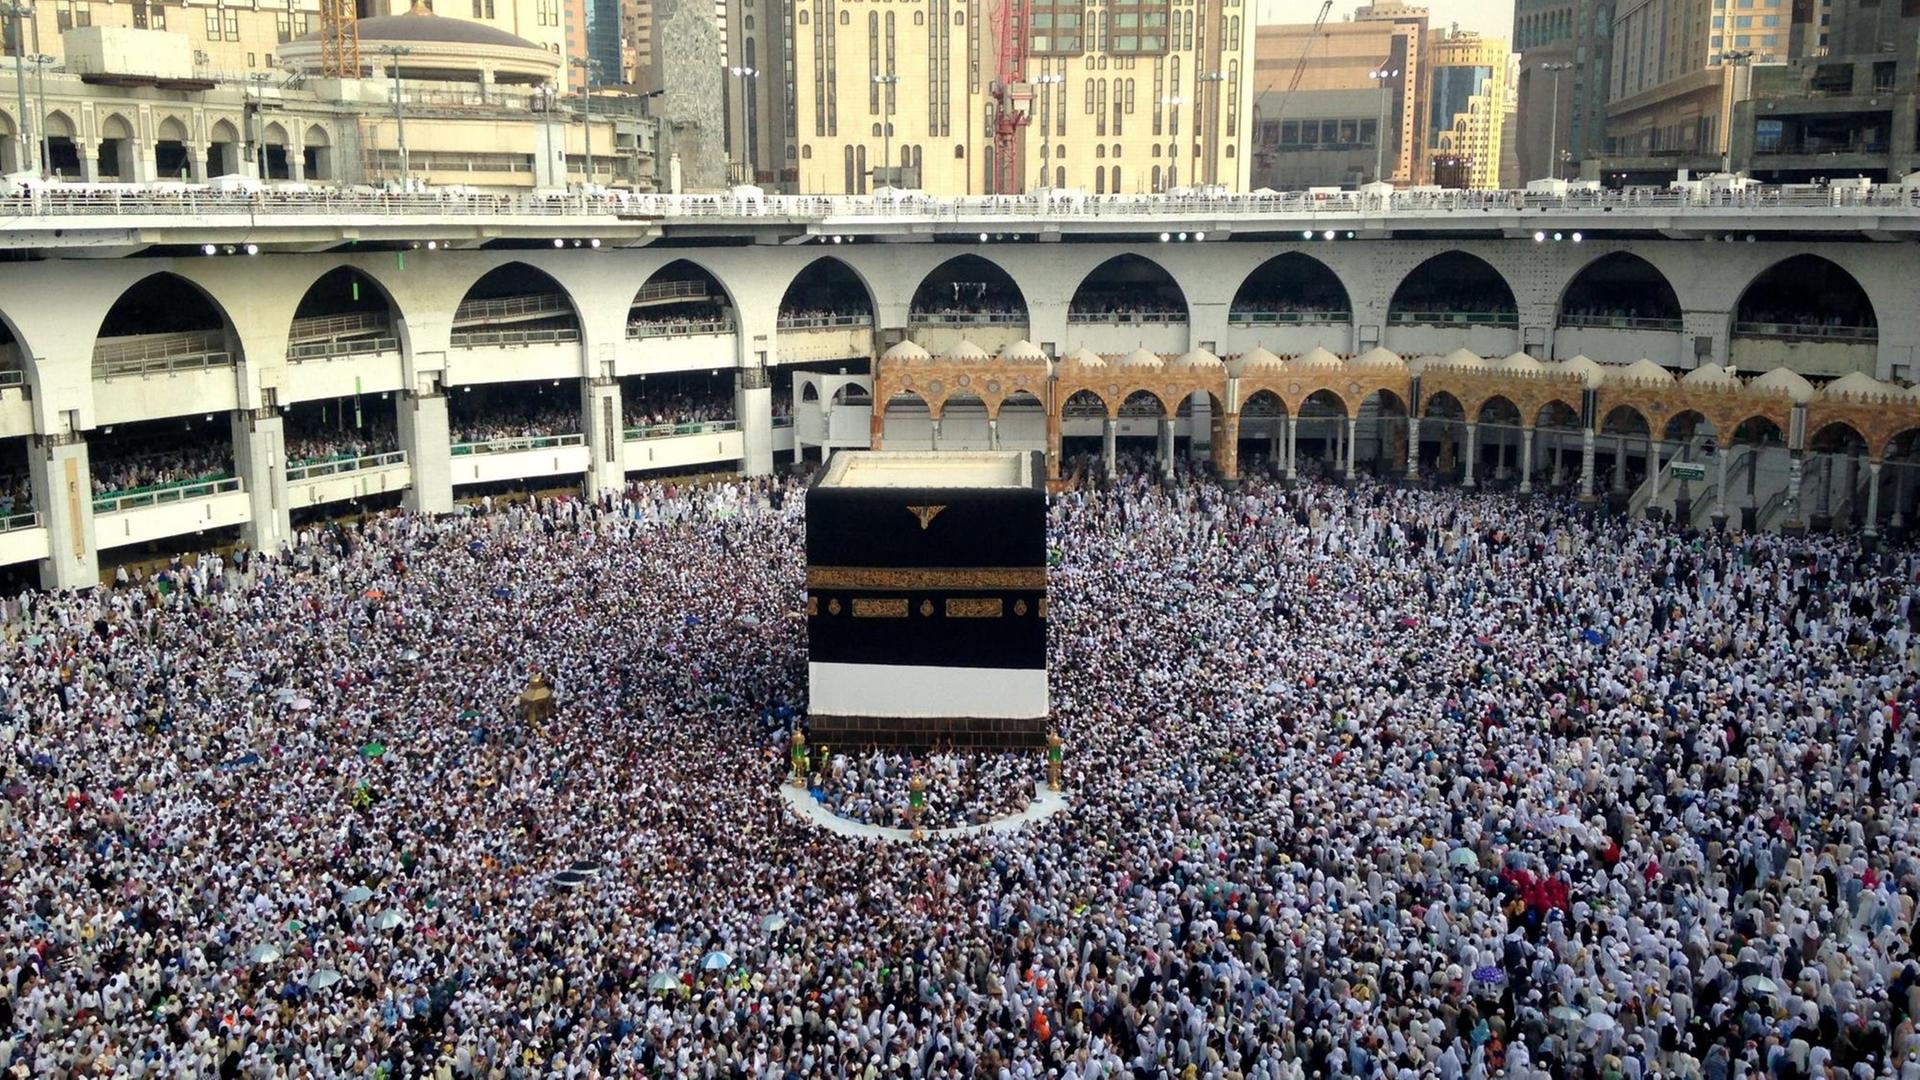 Die Große Moschee von Mekka mit der Kaaba in der Mitte und einer großen Menschen-Menge darum herum.